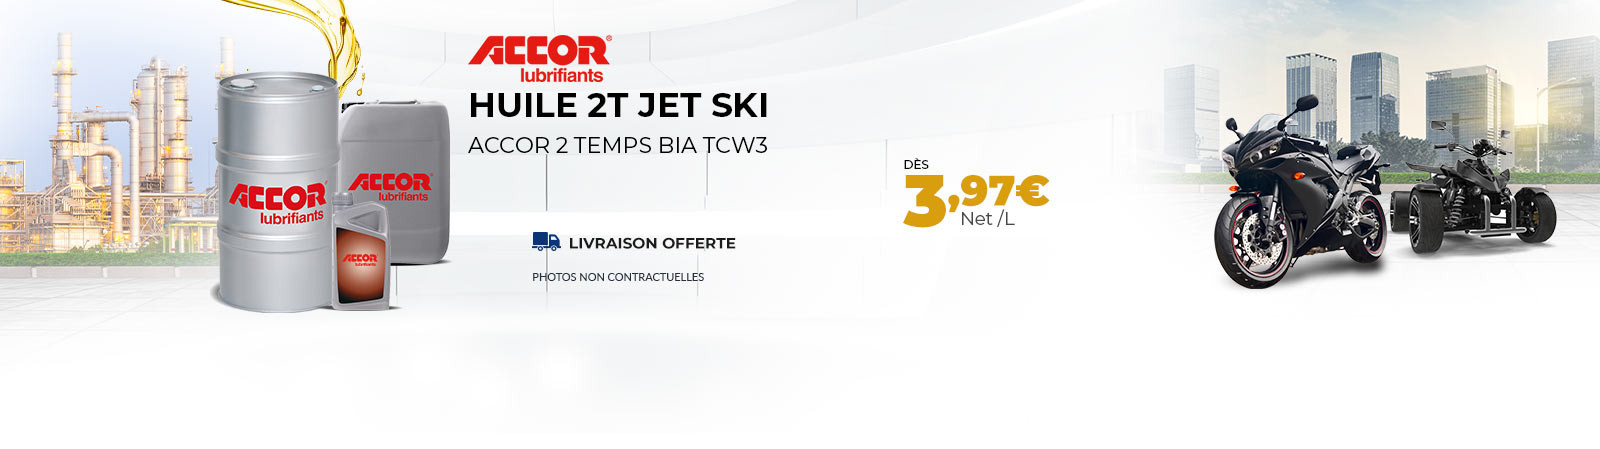 Huile 2T Jet Ski dès 3.97 €/l PORT OFFERT